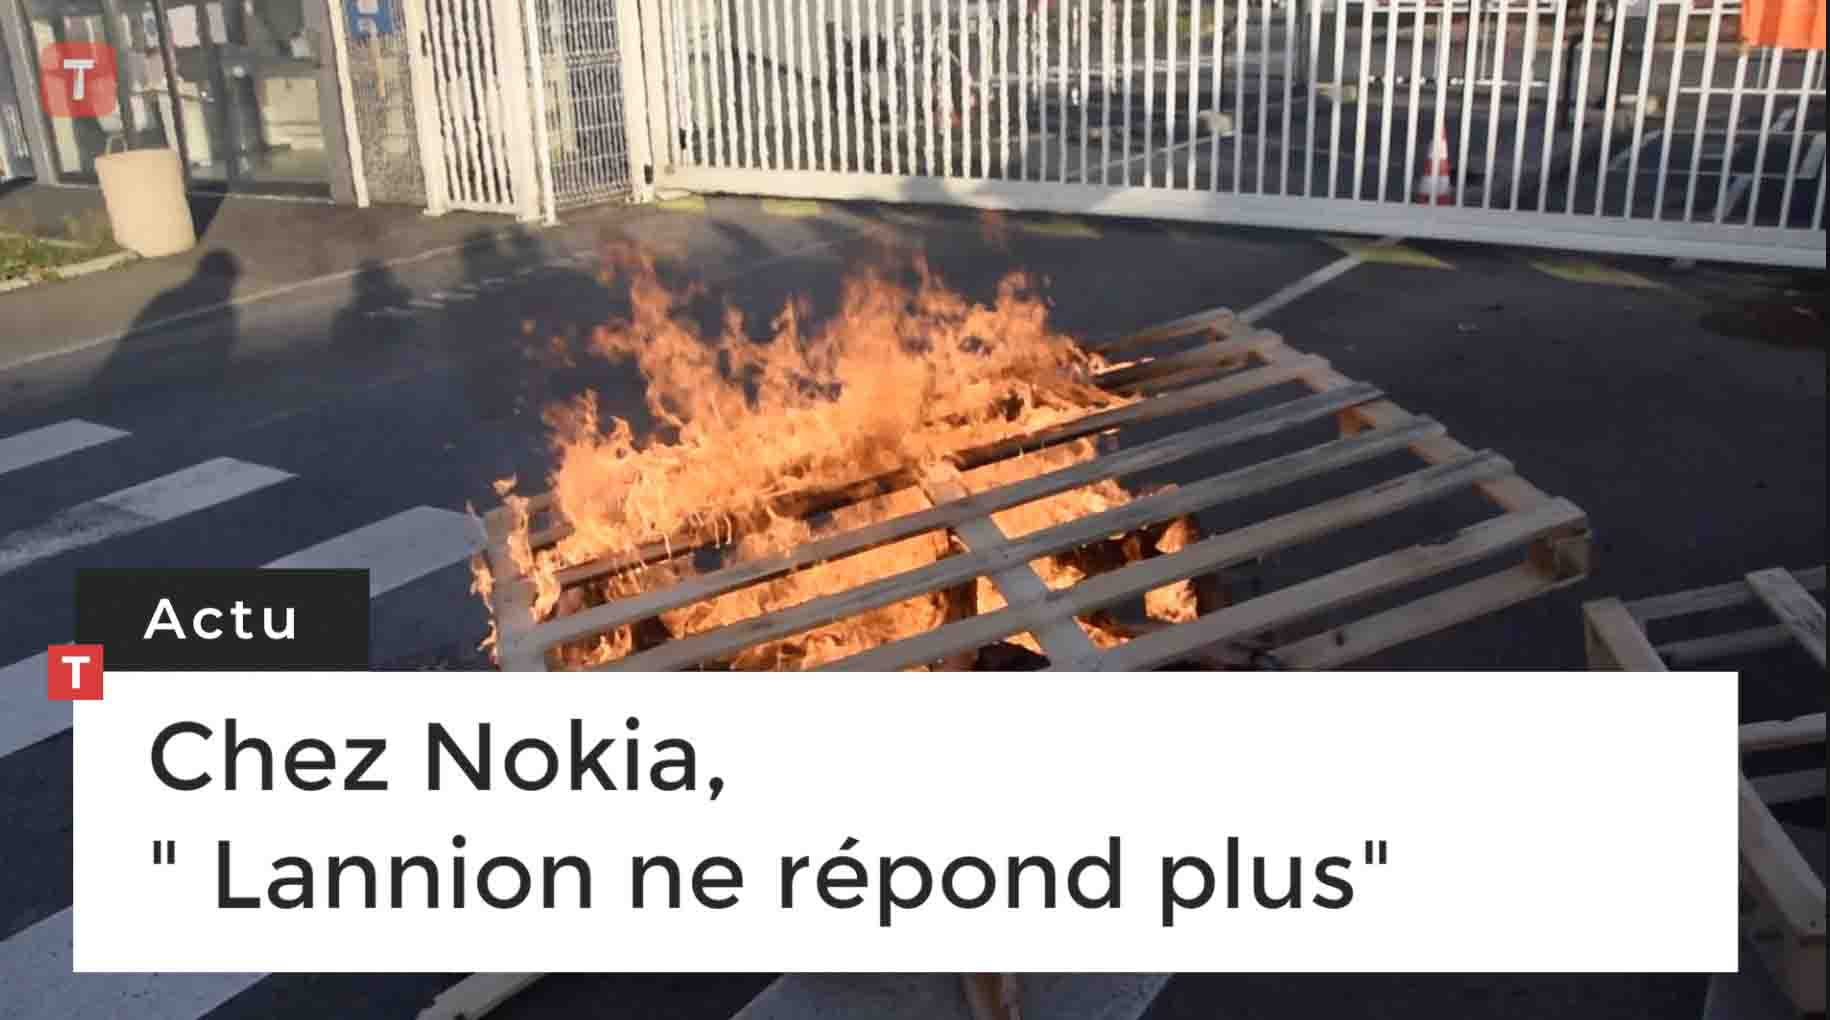 Chez Nokia, " Lannion ne répond plus" (Le Télégramme)